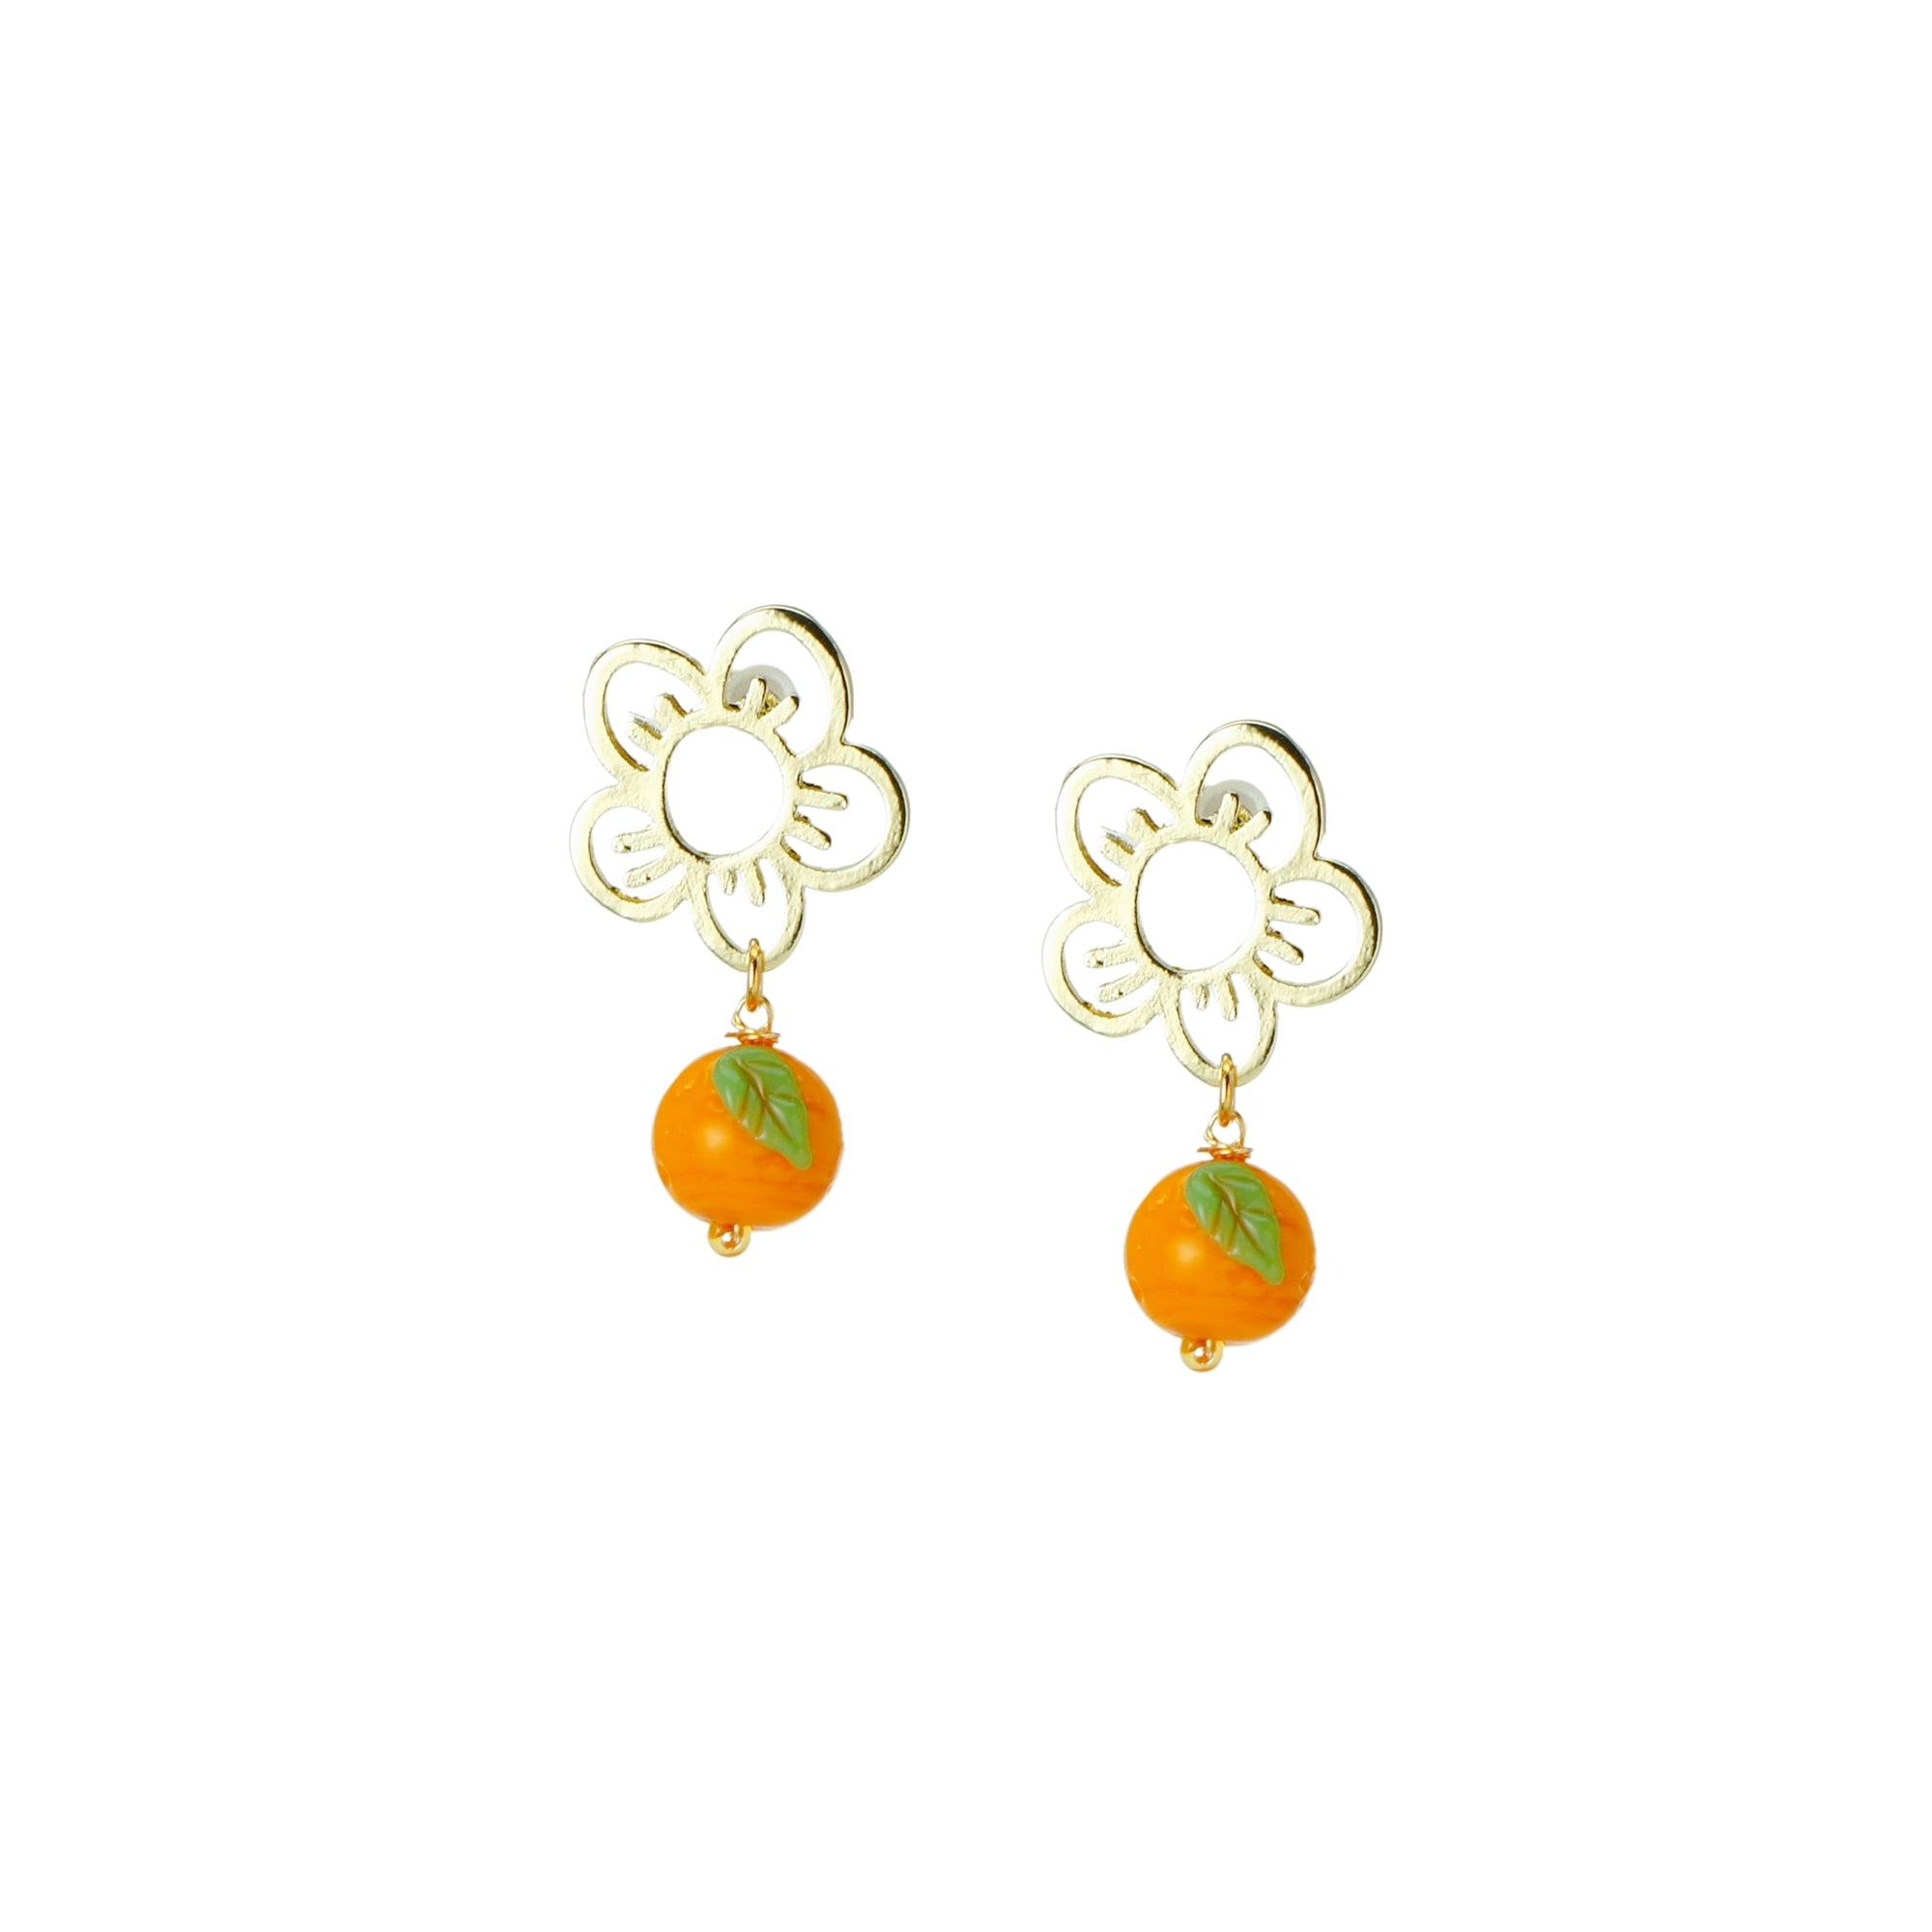 Cutie Pie Lampwork Glass Tangerine Drop Earrings with Flower Studs